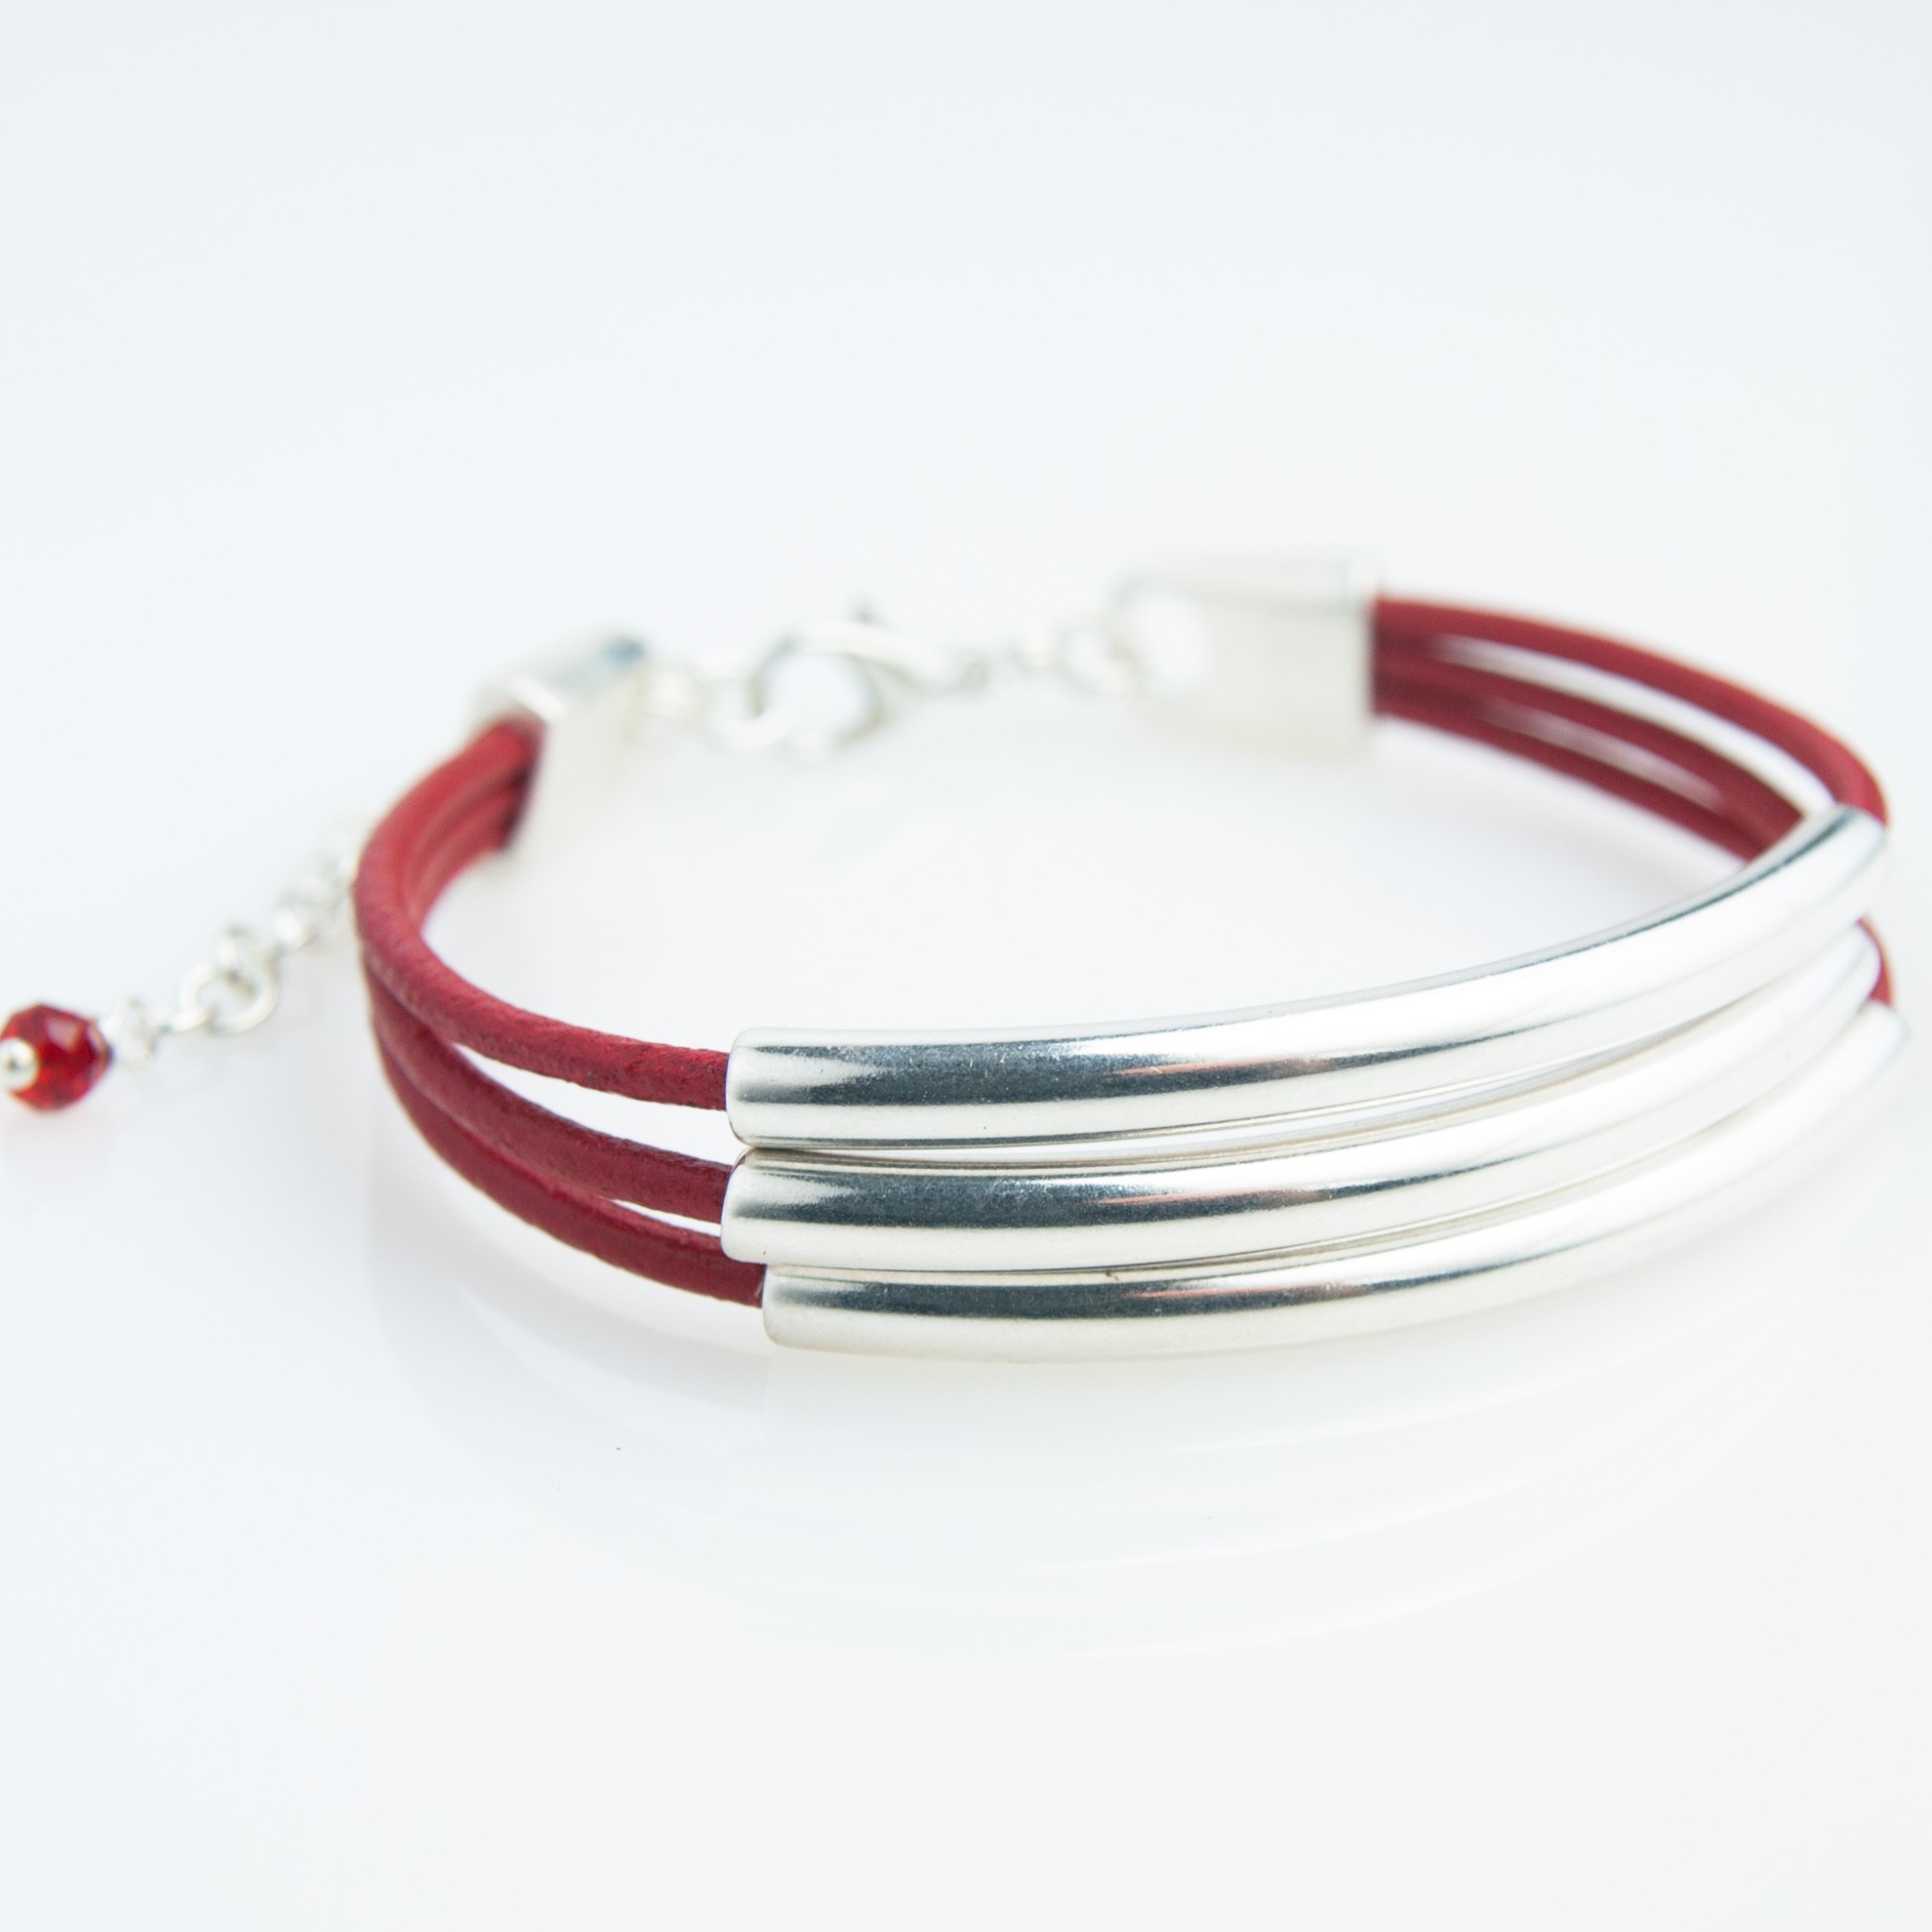 Bracelet cuir 2 cordons plats rouge et rouge cloutés or, fermoir